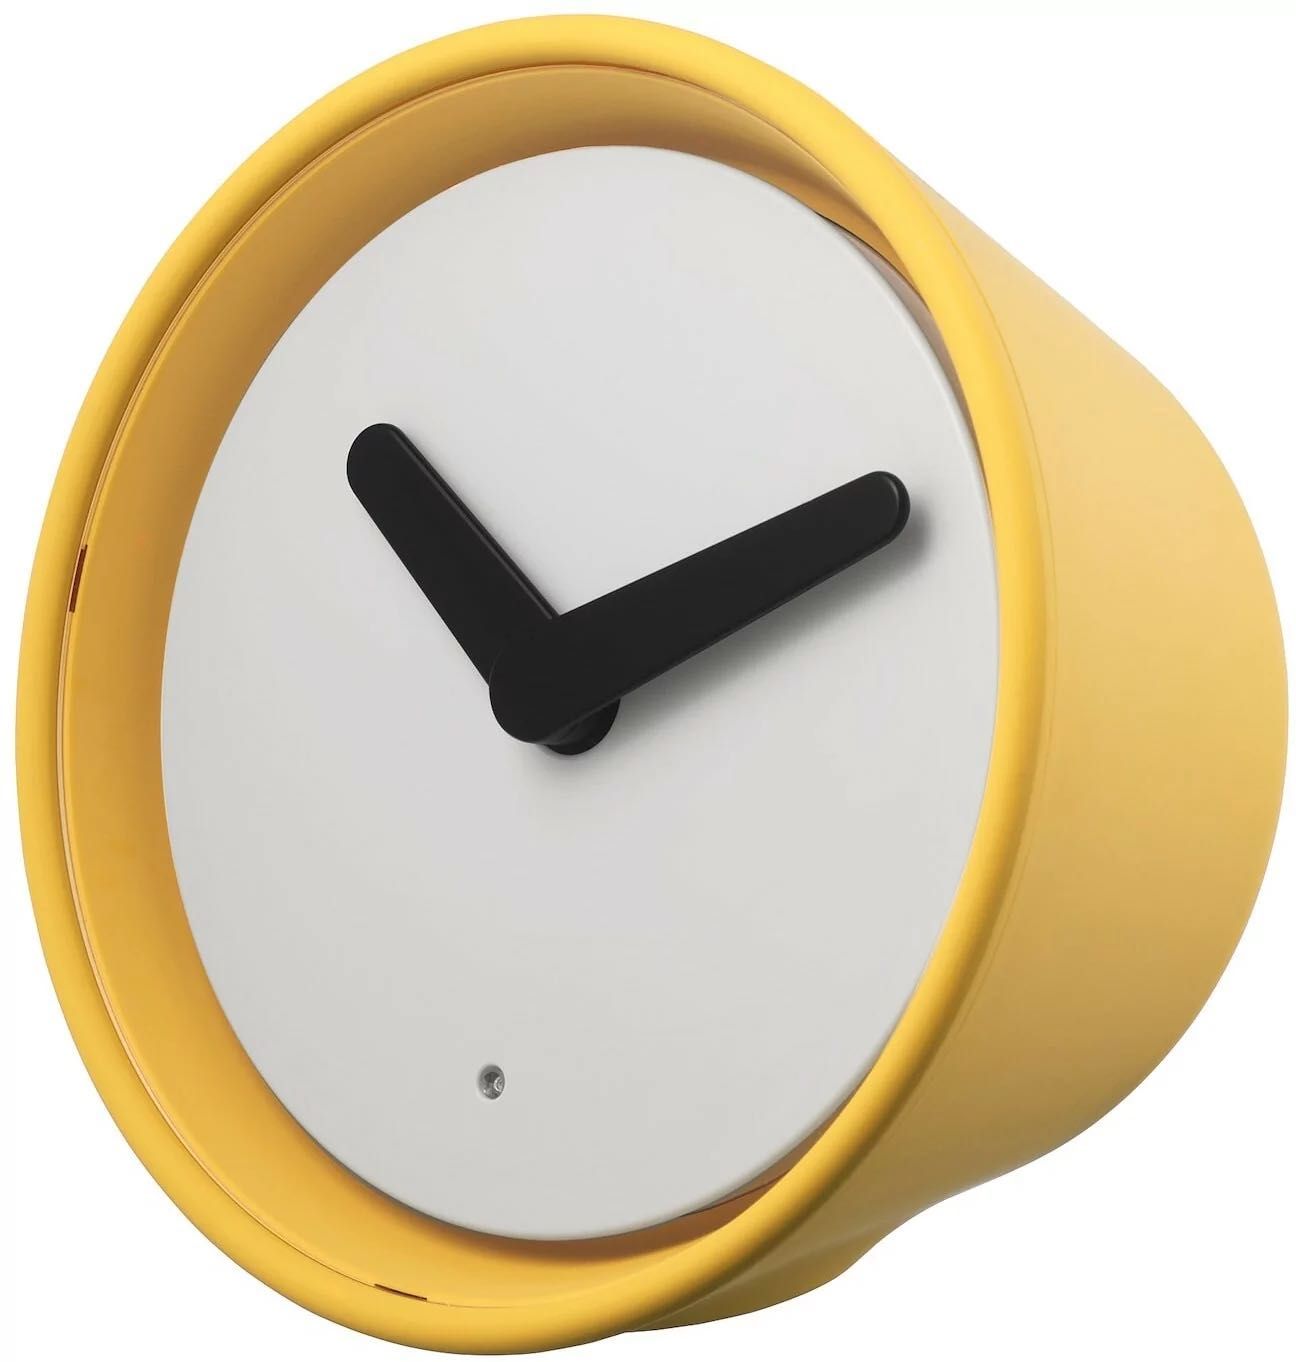 Unikat stara Ikea STOLPA Zegar, LED żółty budzik